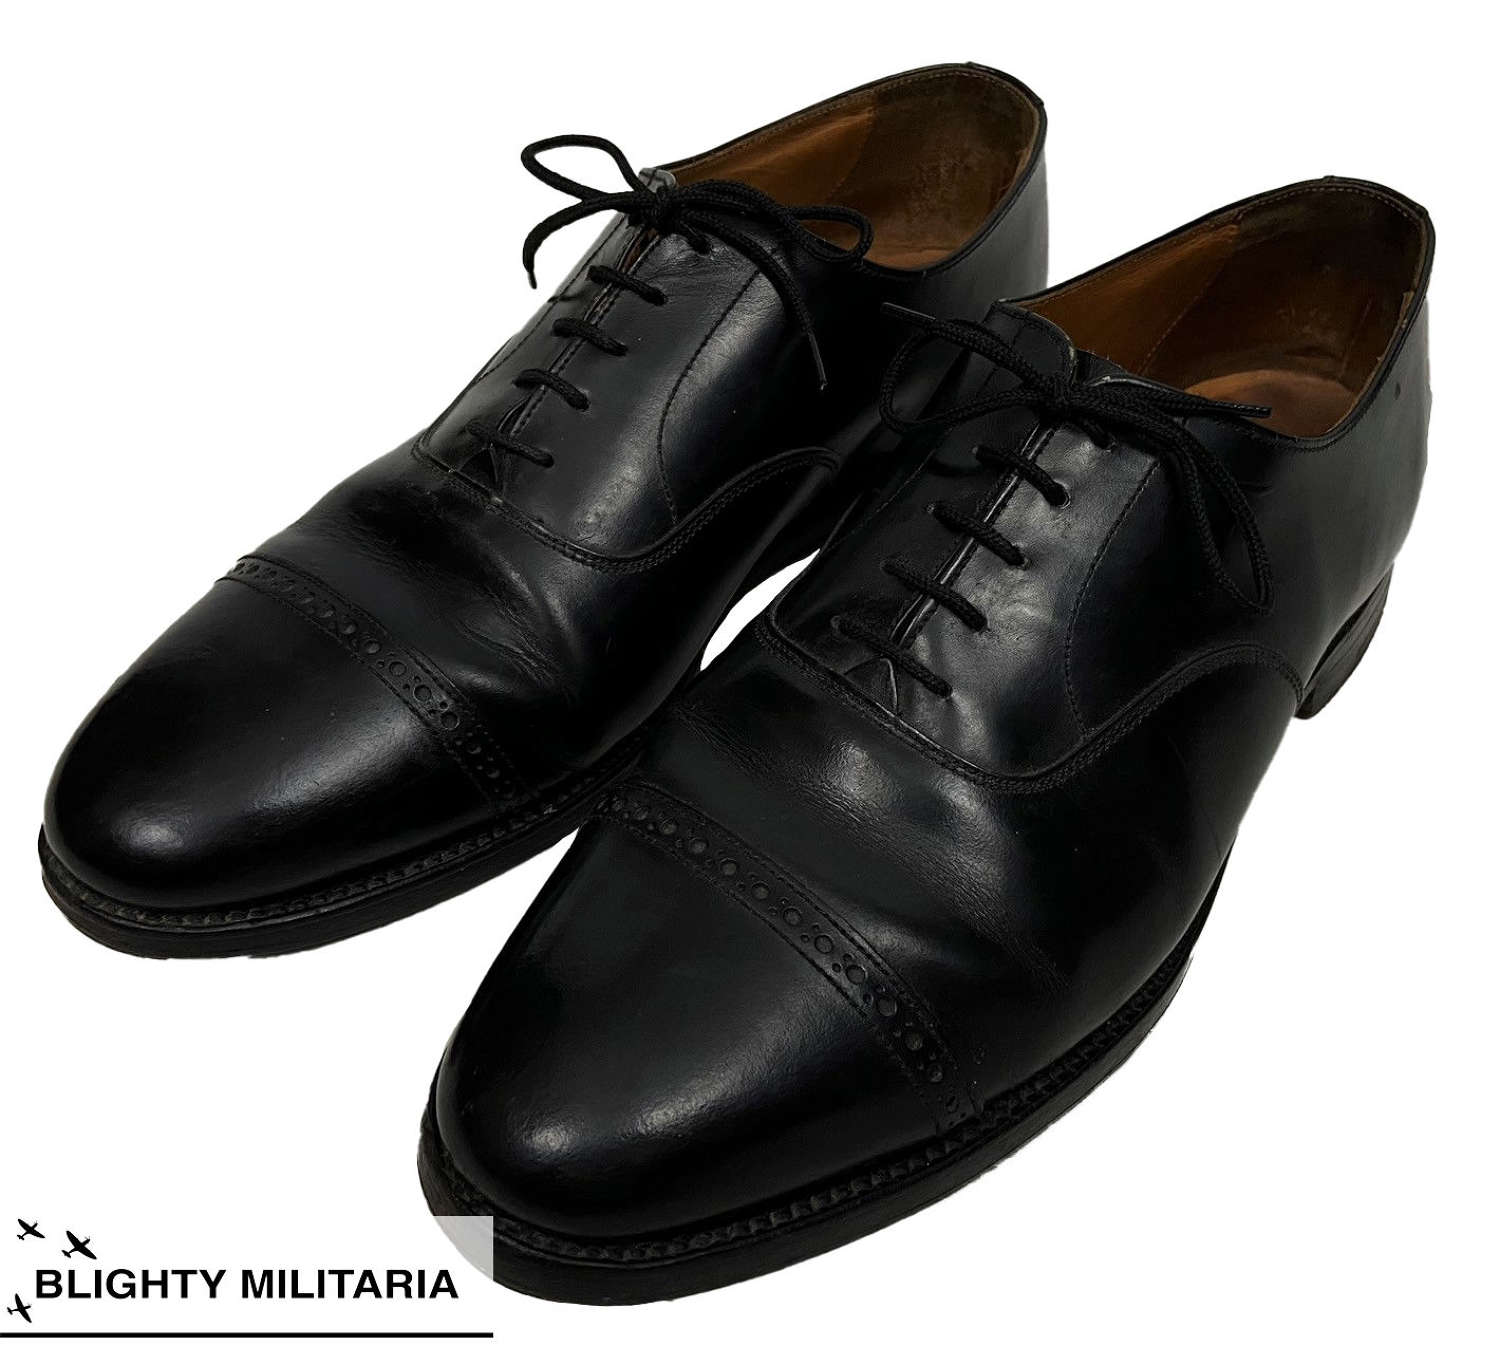 Original 1960s Men's Black Oxford Shoes by 'Coles' - Size 9